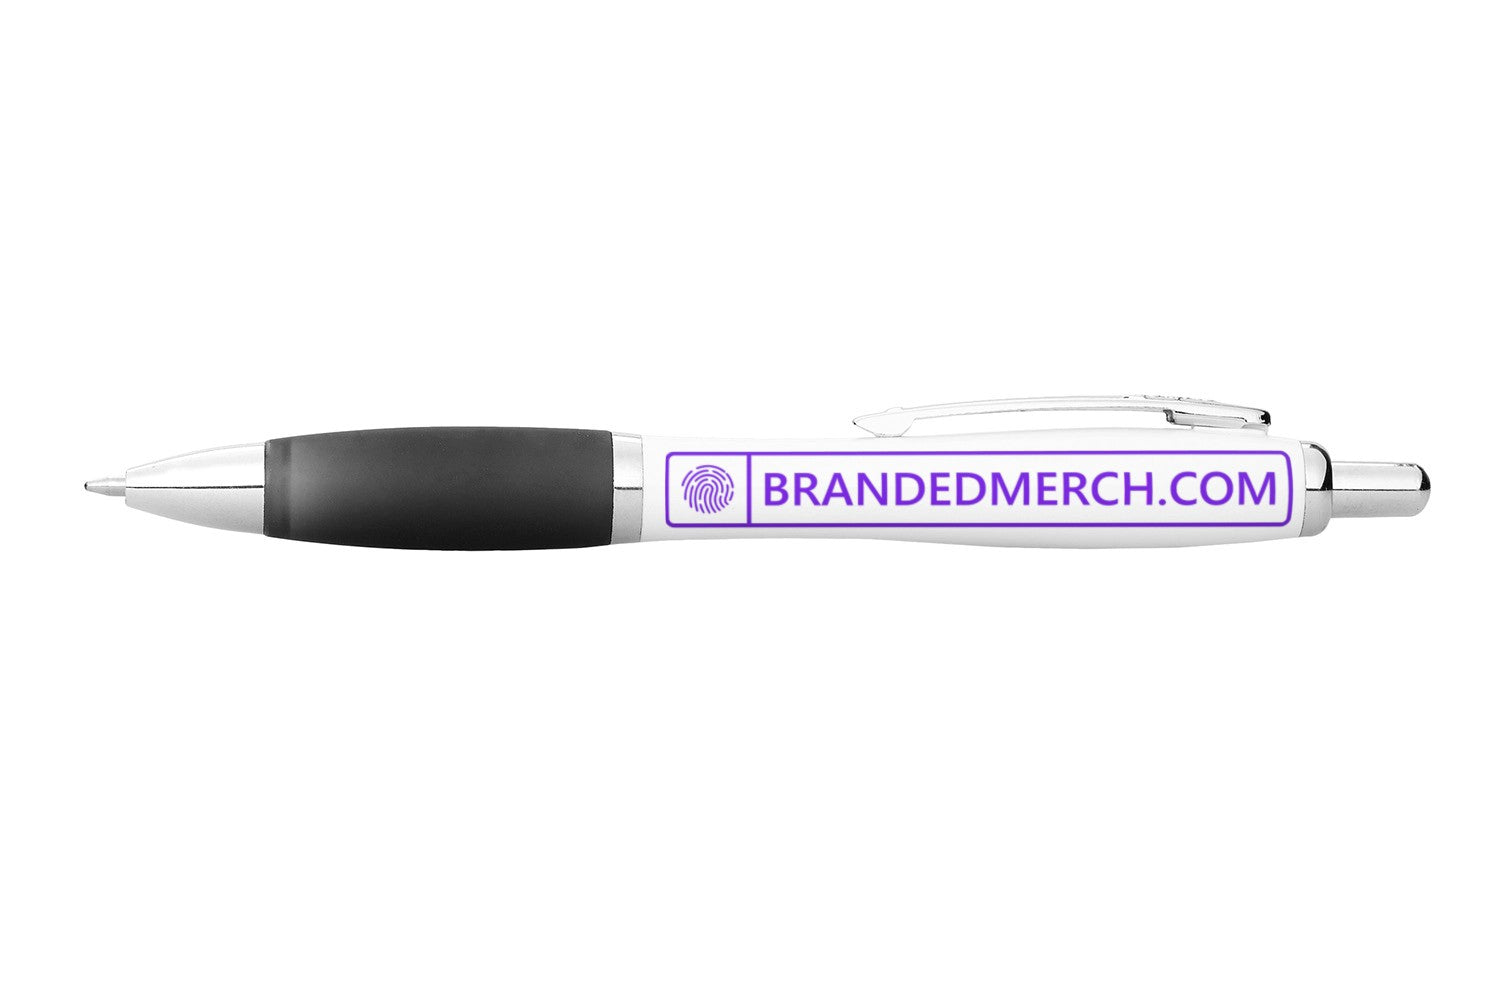 Starter Bundle-3 Items= Branded Pens + Branded Notepads + Branded Mugs